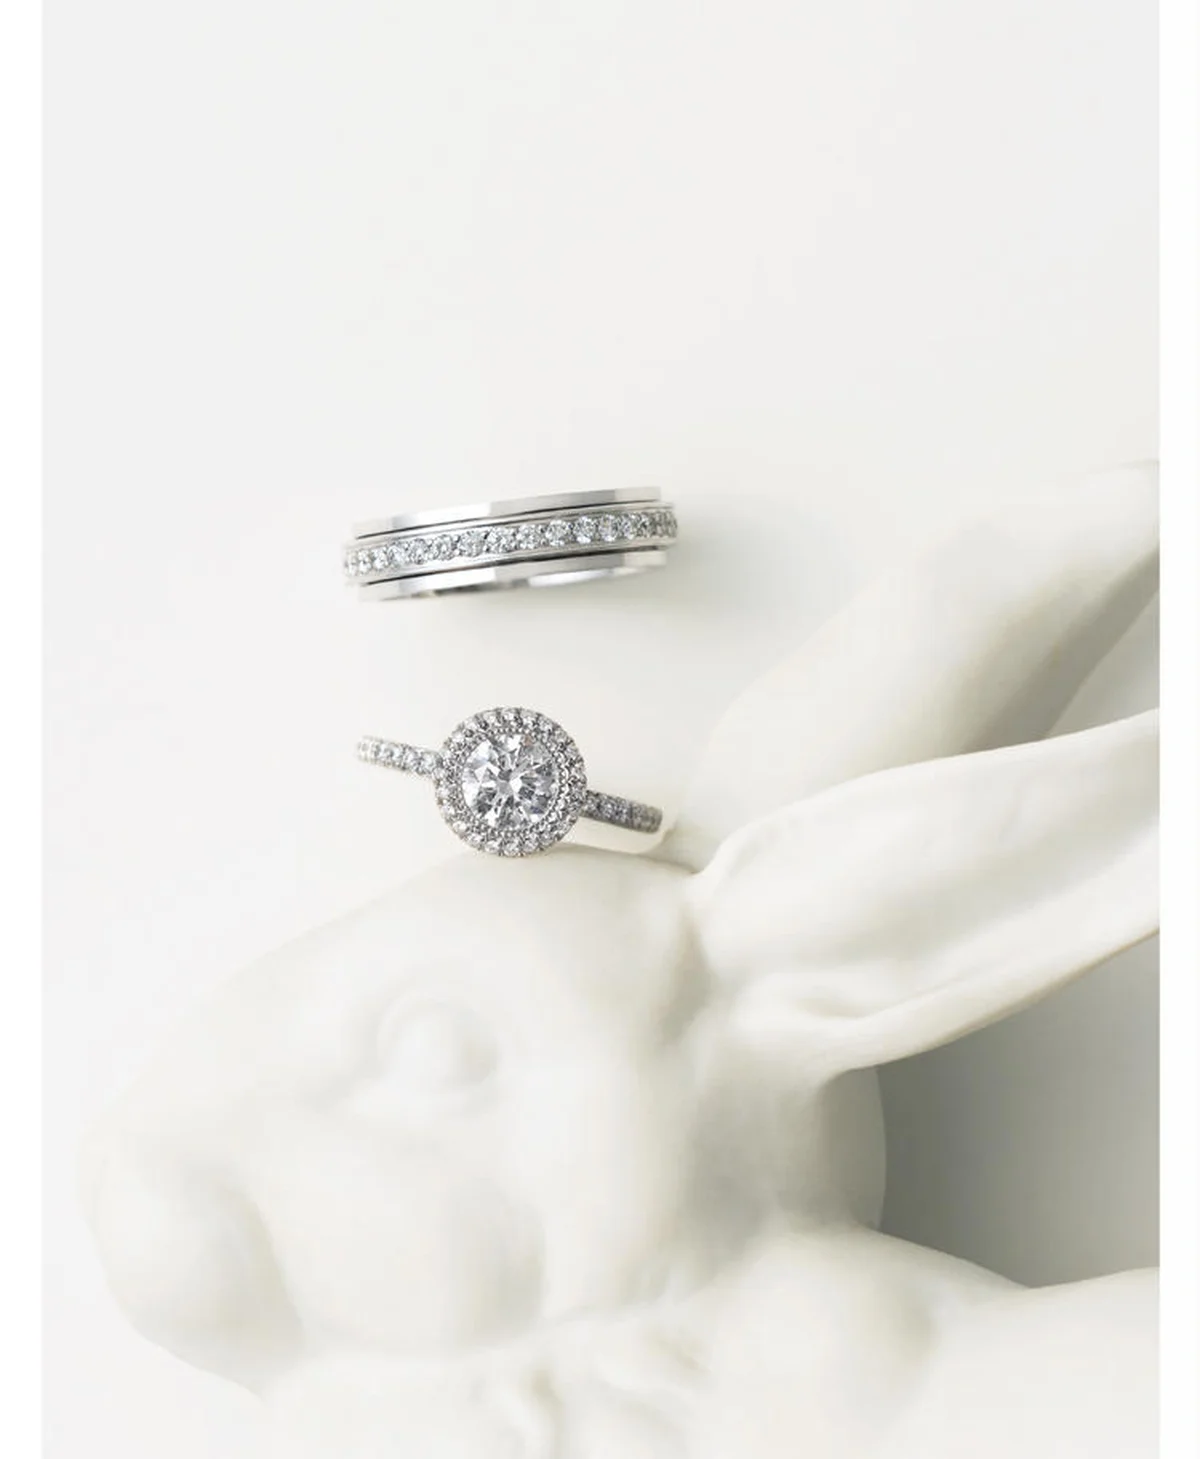 Piaget（ピアジェ）の結婚指輪・婚約指輪